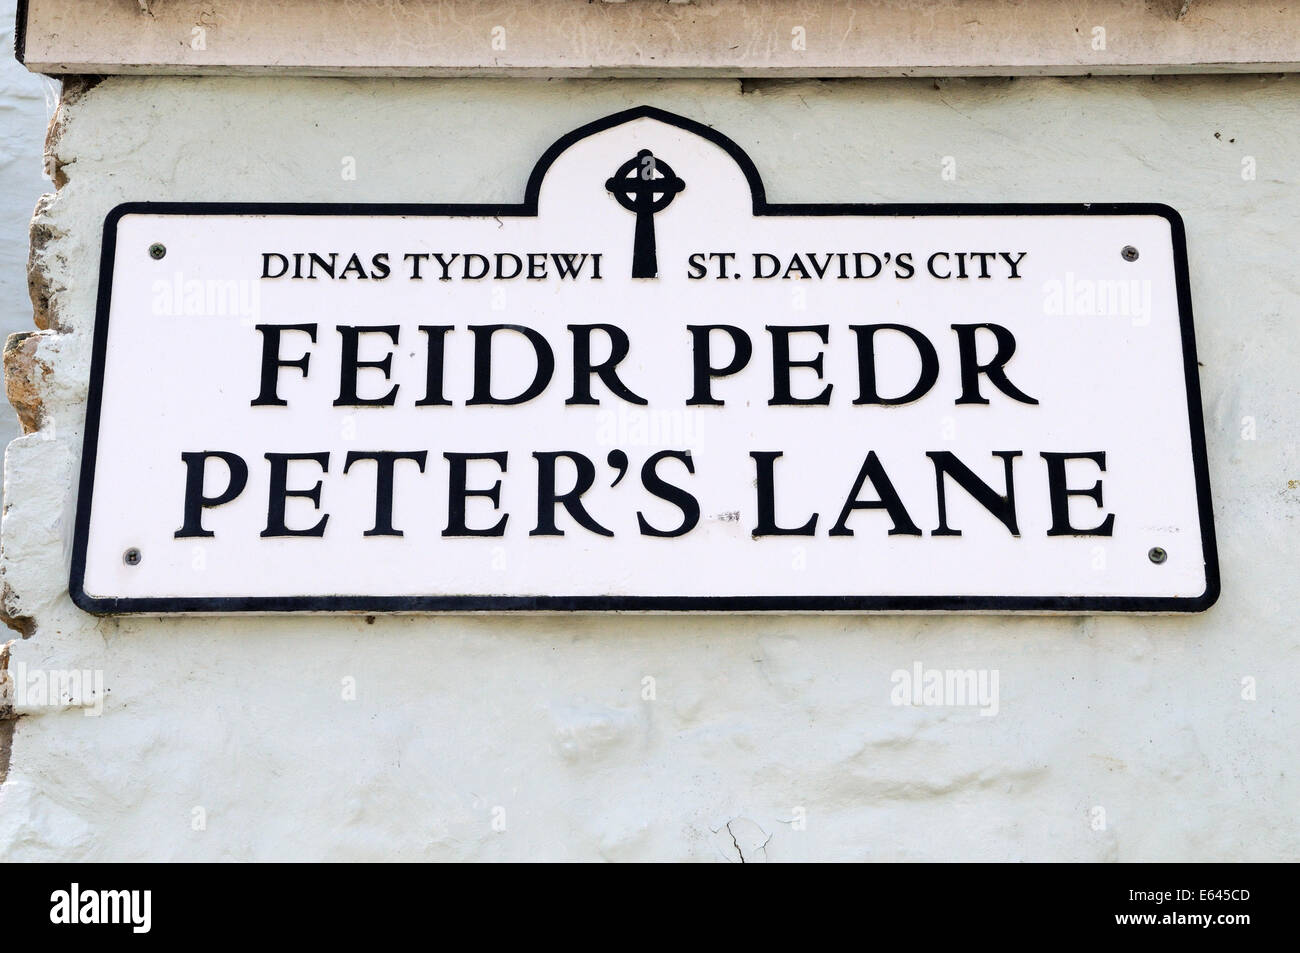 Zweisprachigen Zeichen in Walisisch und Englisch in der kleinen Stadt von St Davids Pembrokeshire Wales Cymru UK GB Stockfoto